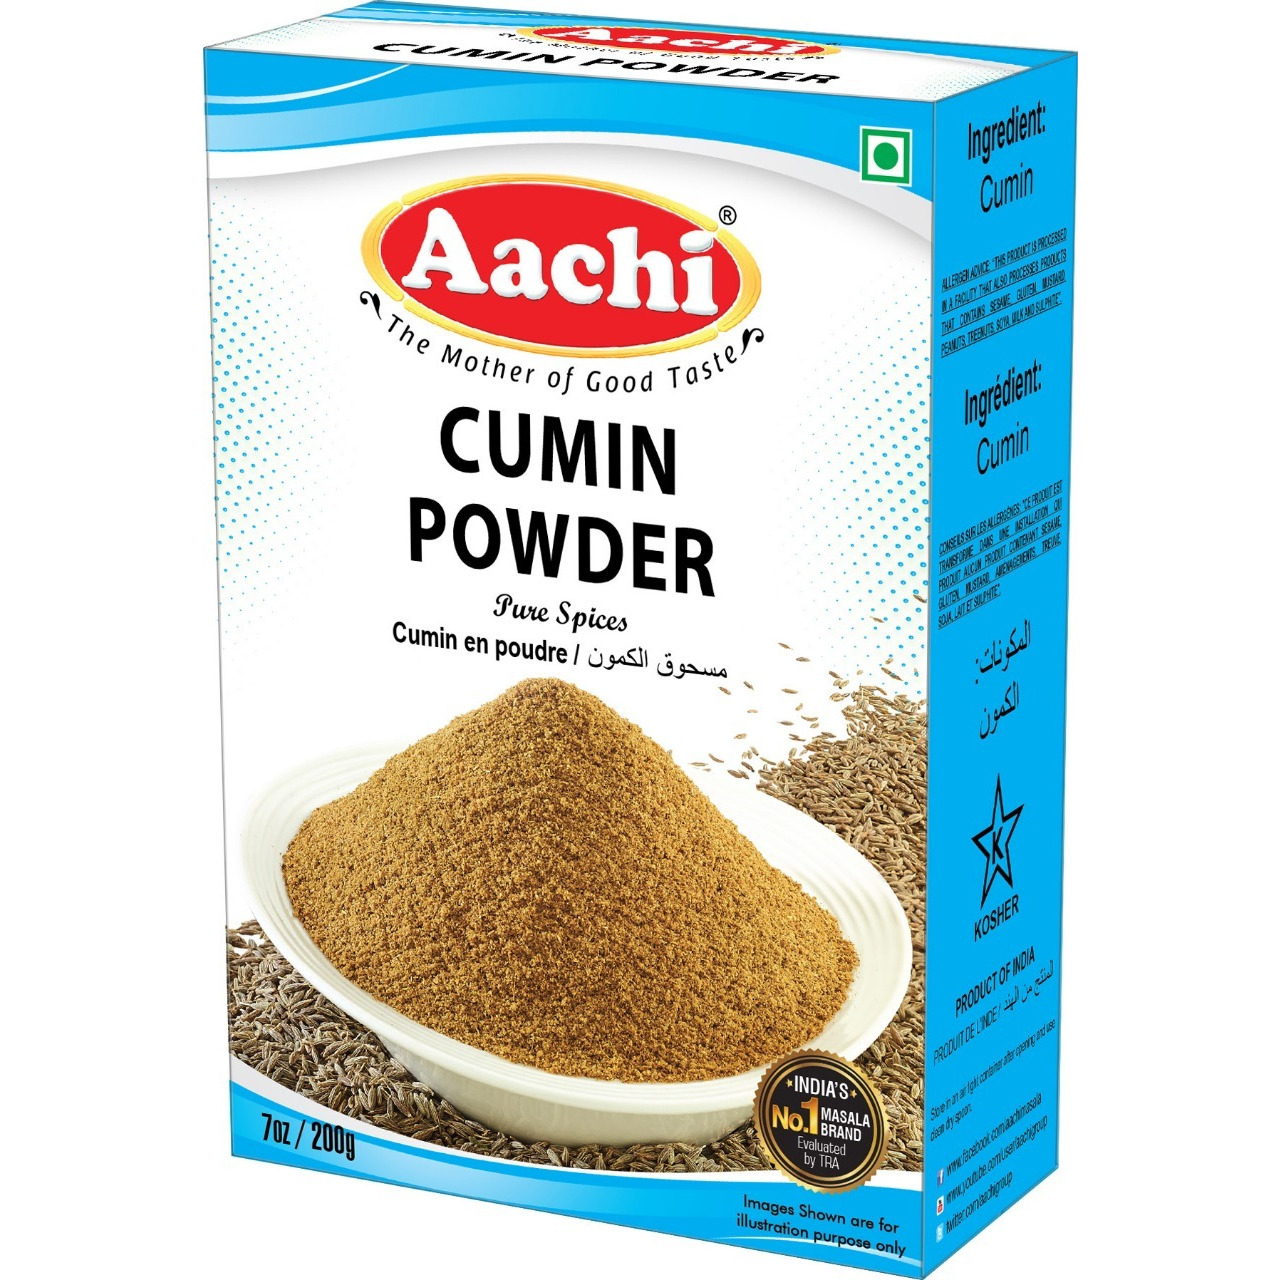 Aachi Cumin Powder - 200 Gm (7 Oz)